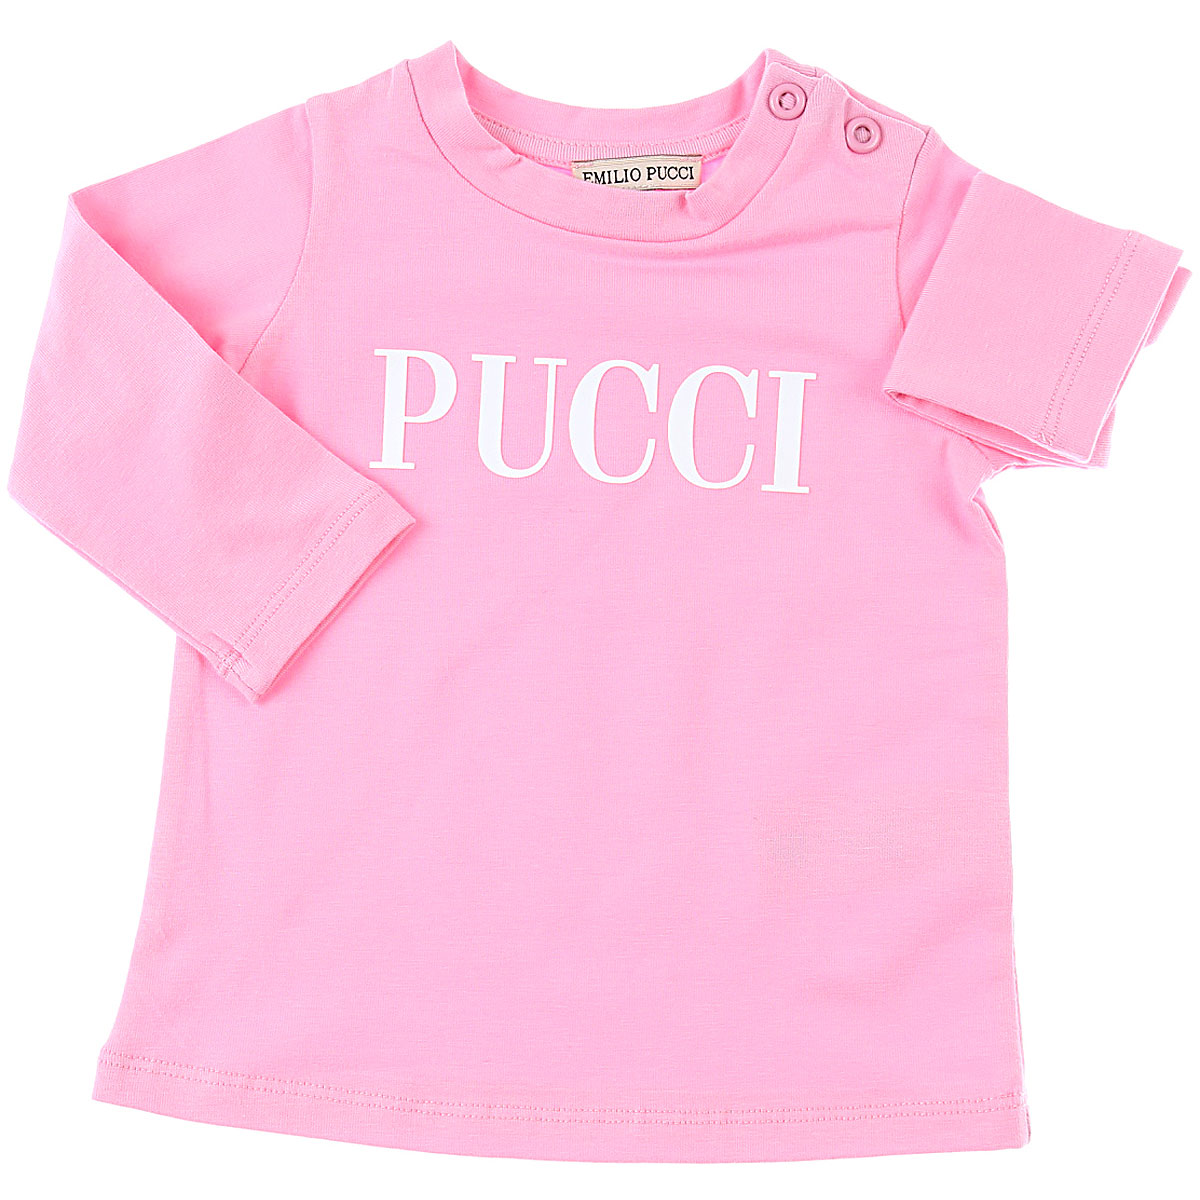 Emilio Pucci Baby T-Shirt für Mädchen Günstig im Sale, Pink, Baumwolle, 2017, 12M 18M 2Y 6M 9M